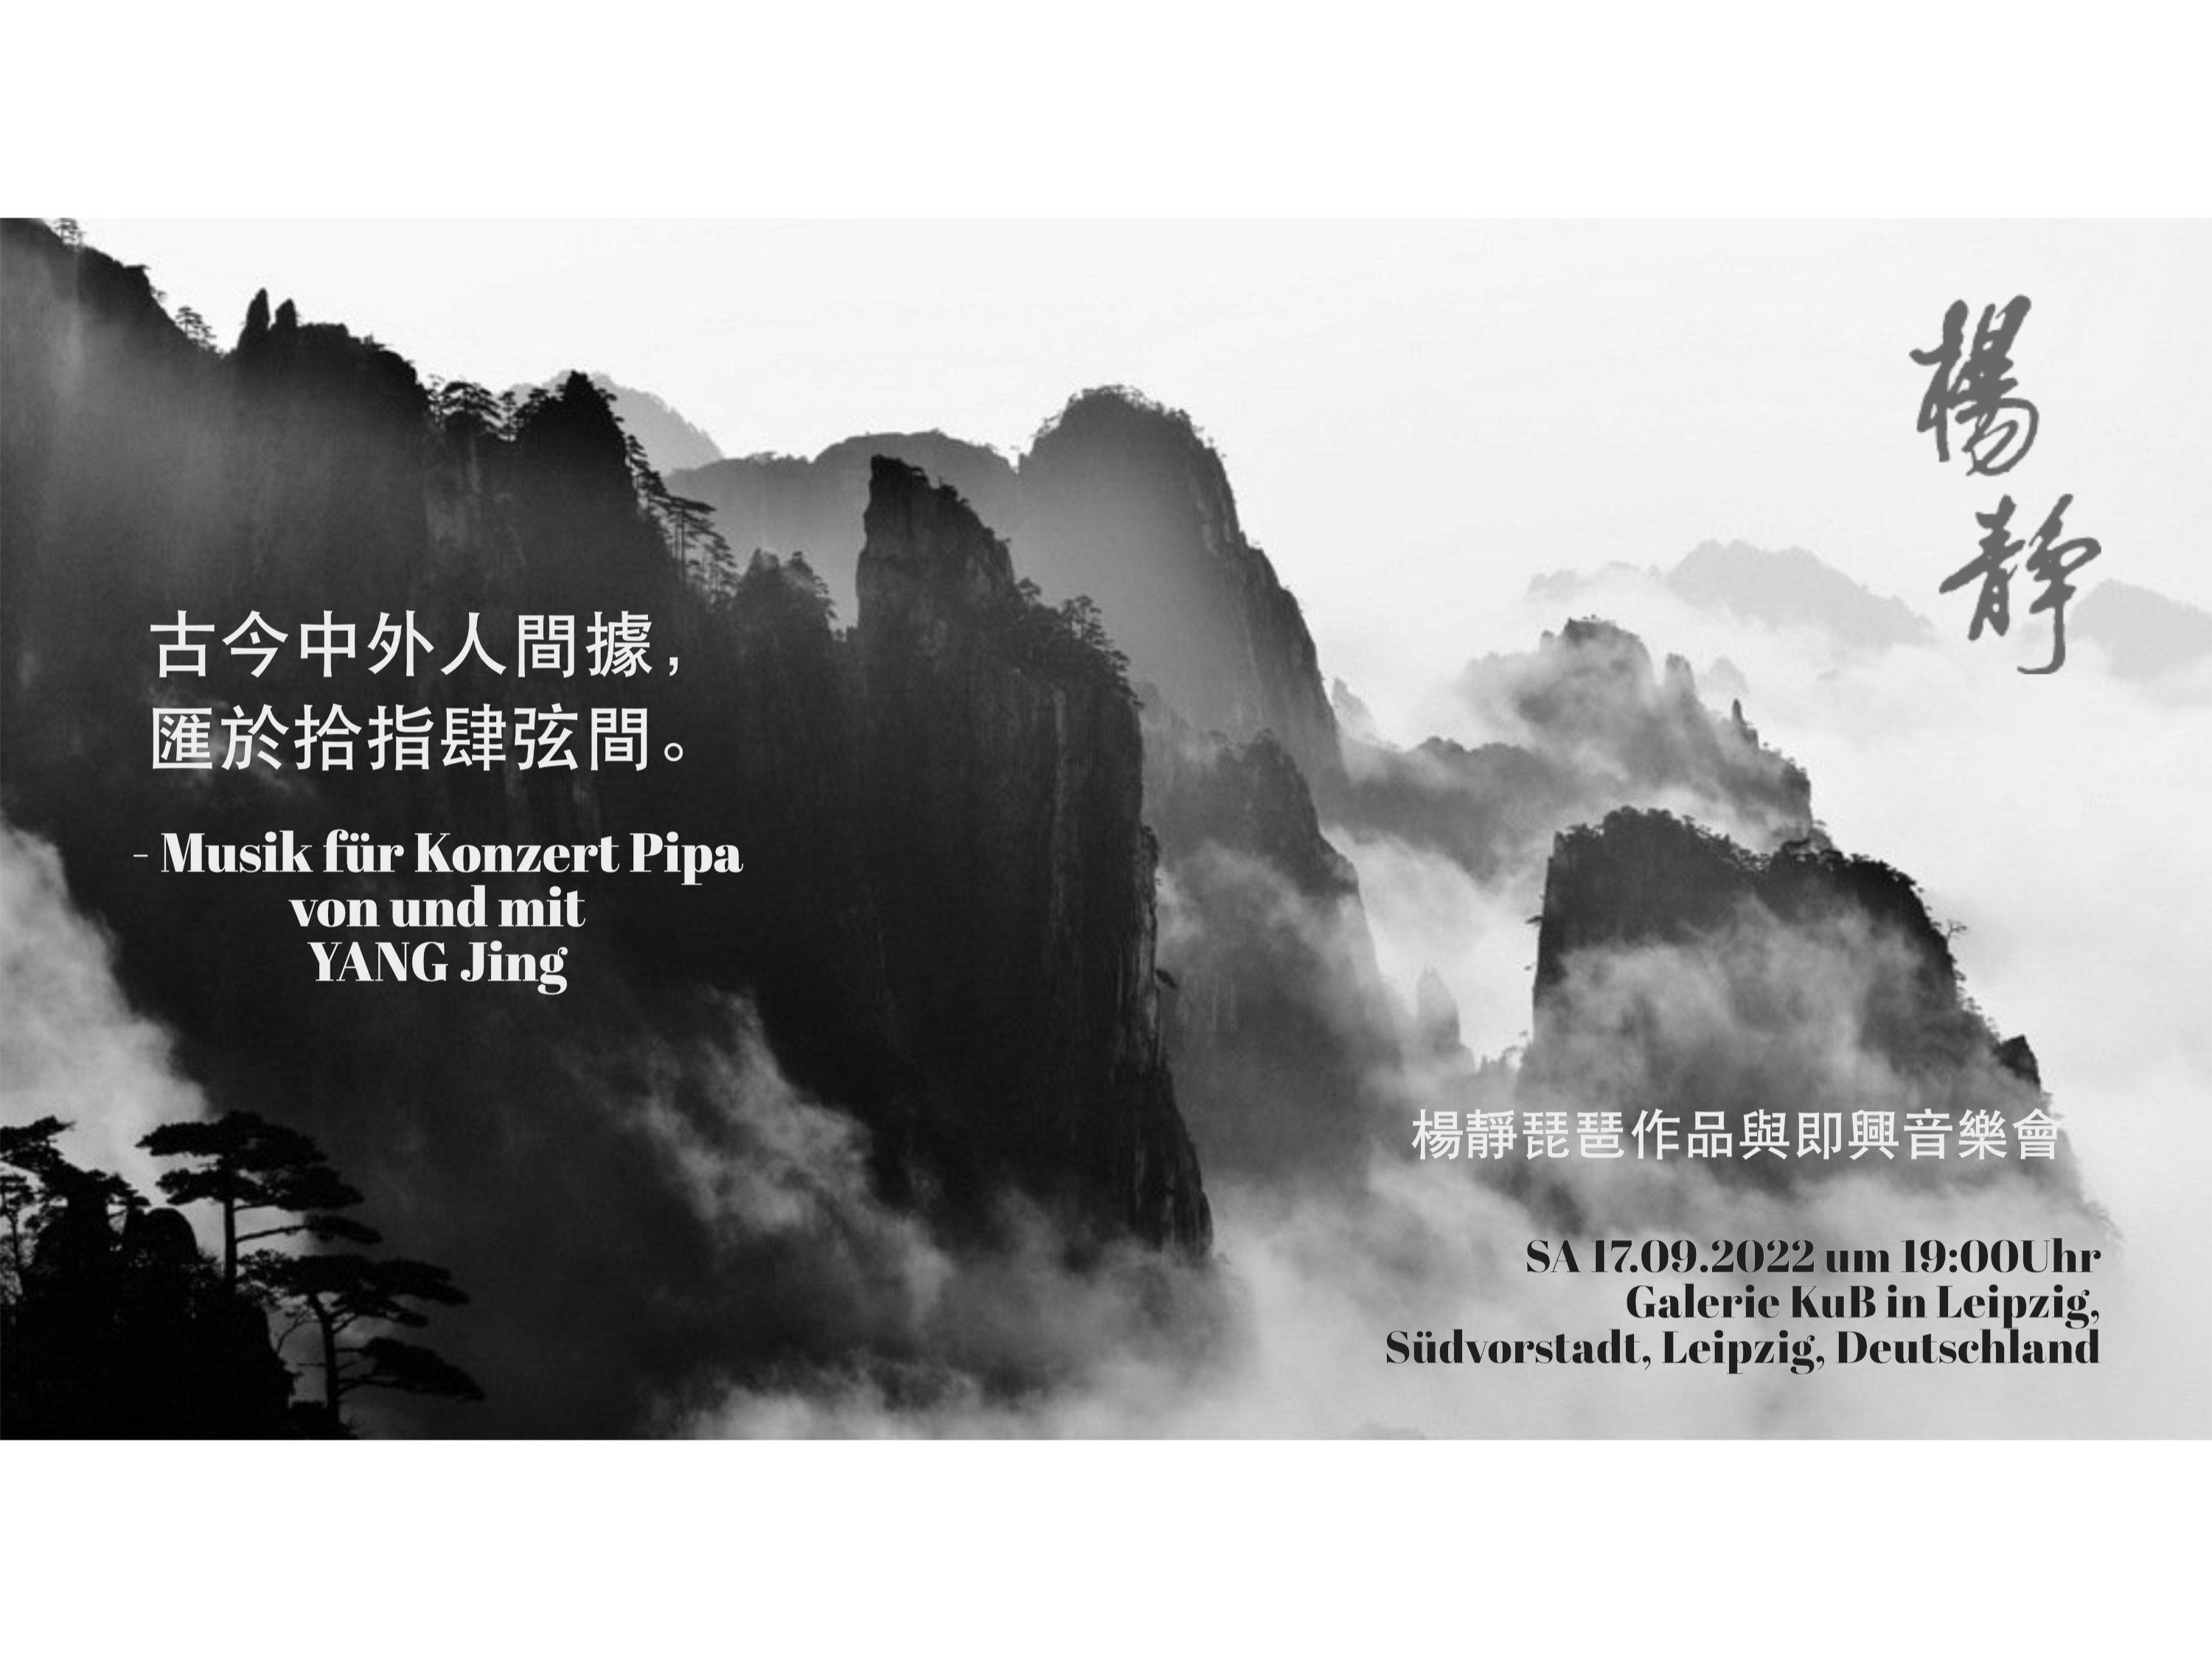 Musik für Konzert Pipa von und mit YANG Jing - neo